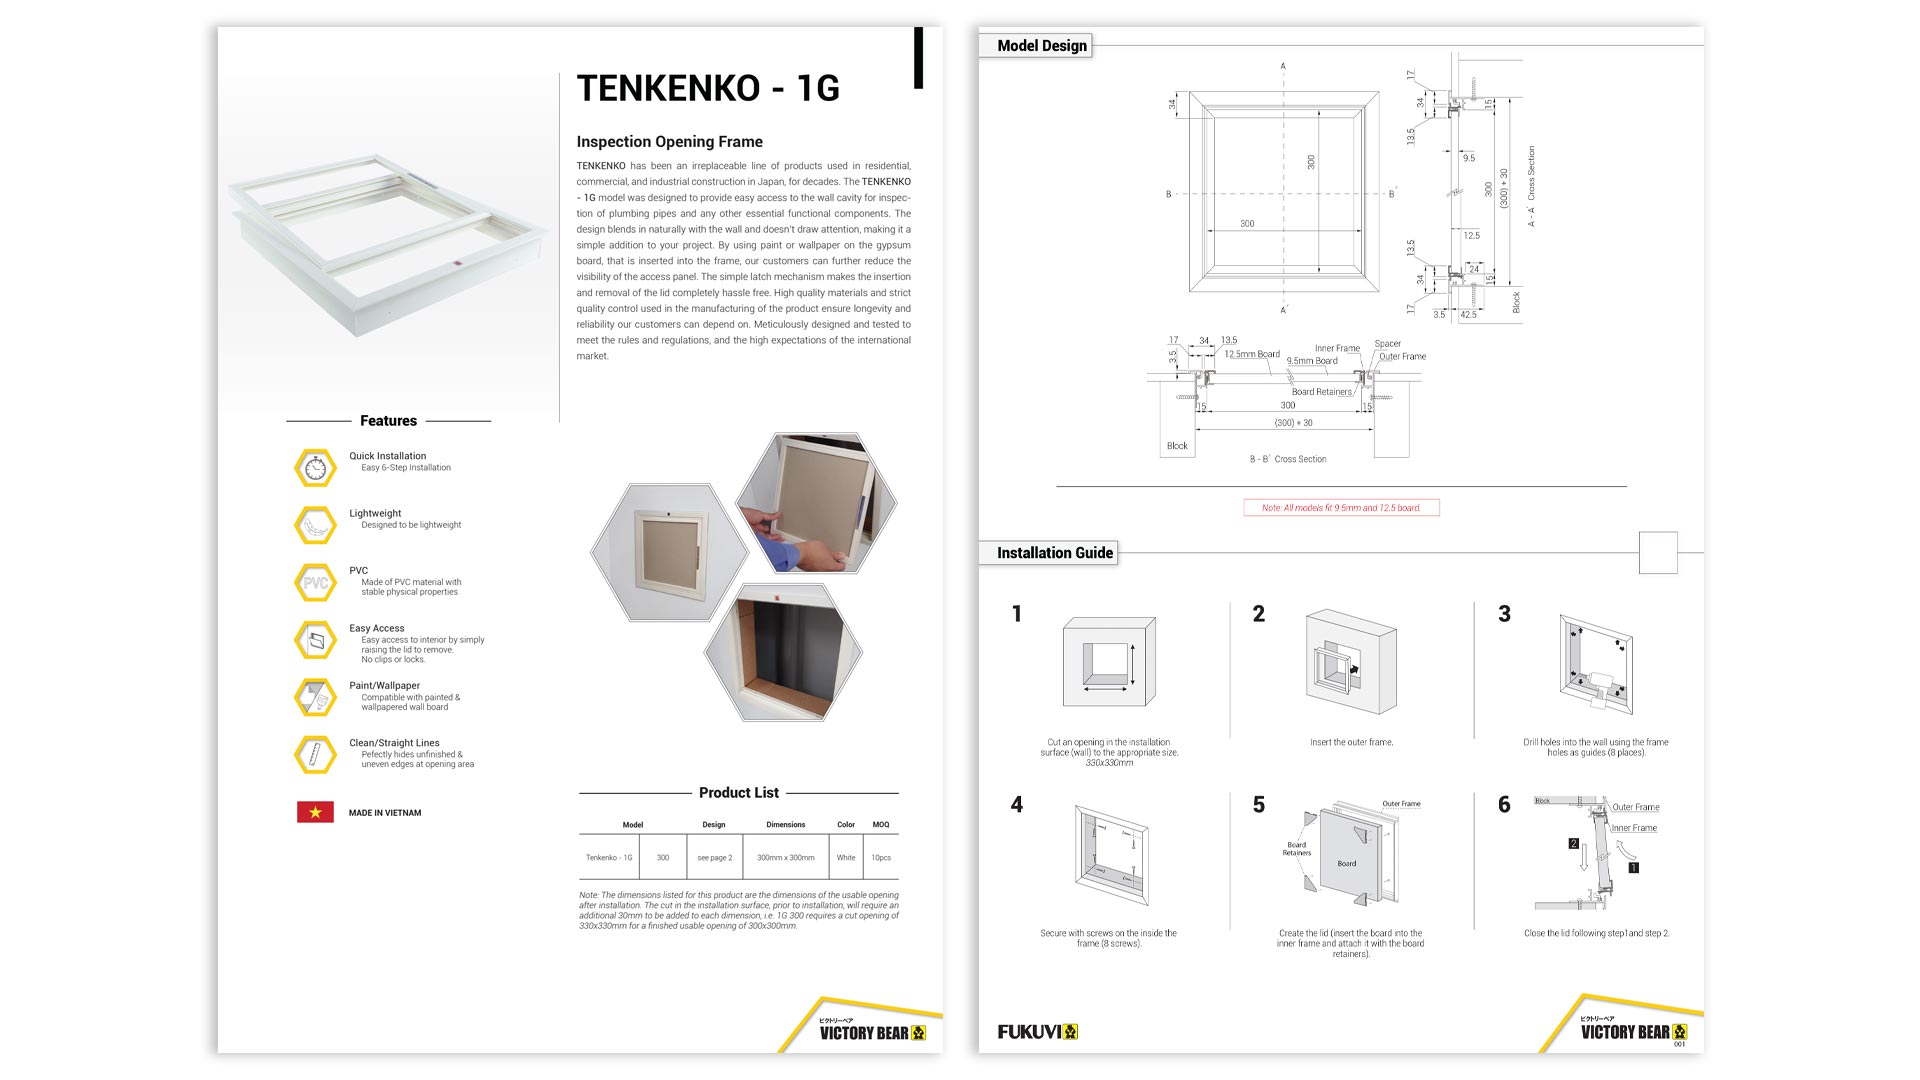 Tenkenko – 1G Product Gallery Brochure